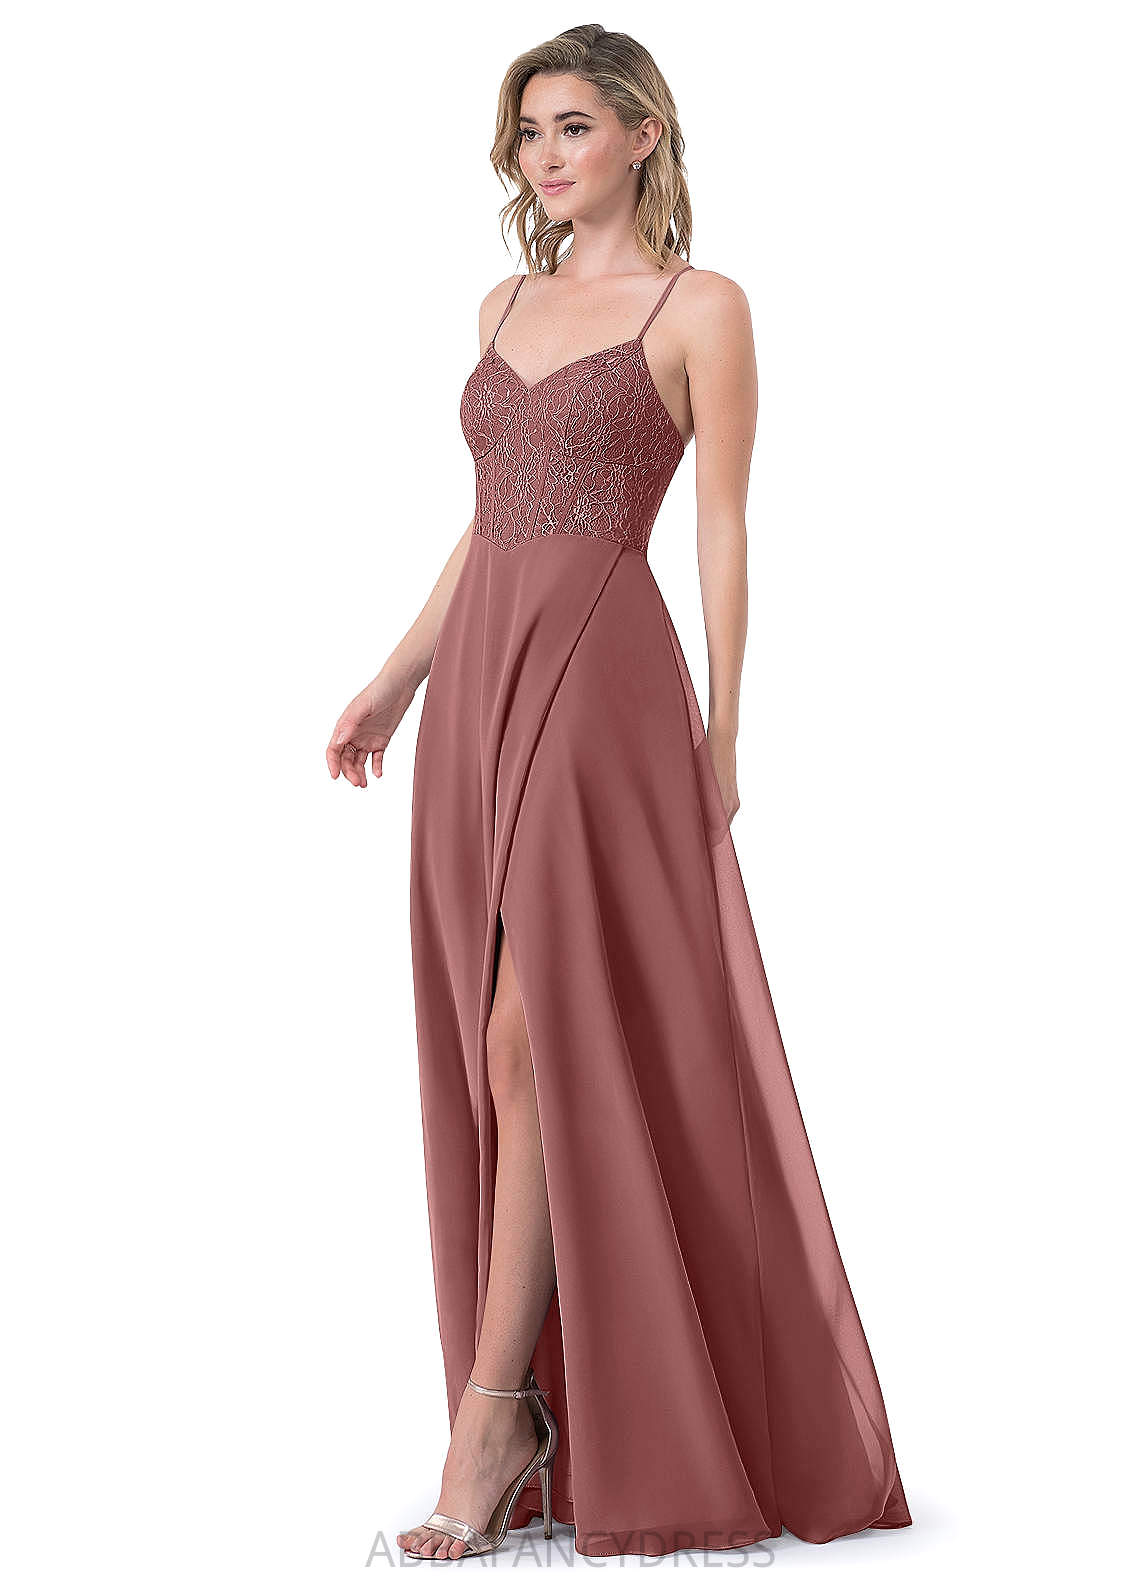 Kassandra Natural Waist Trumpet/Mermaid Spaghetti Staps Floor Length Sleeveless Bridesmaid Dresses